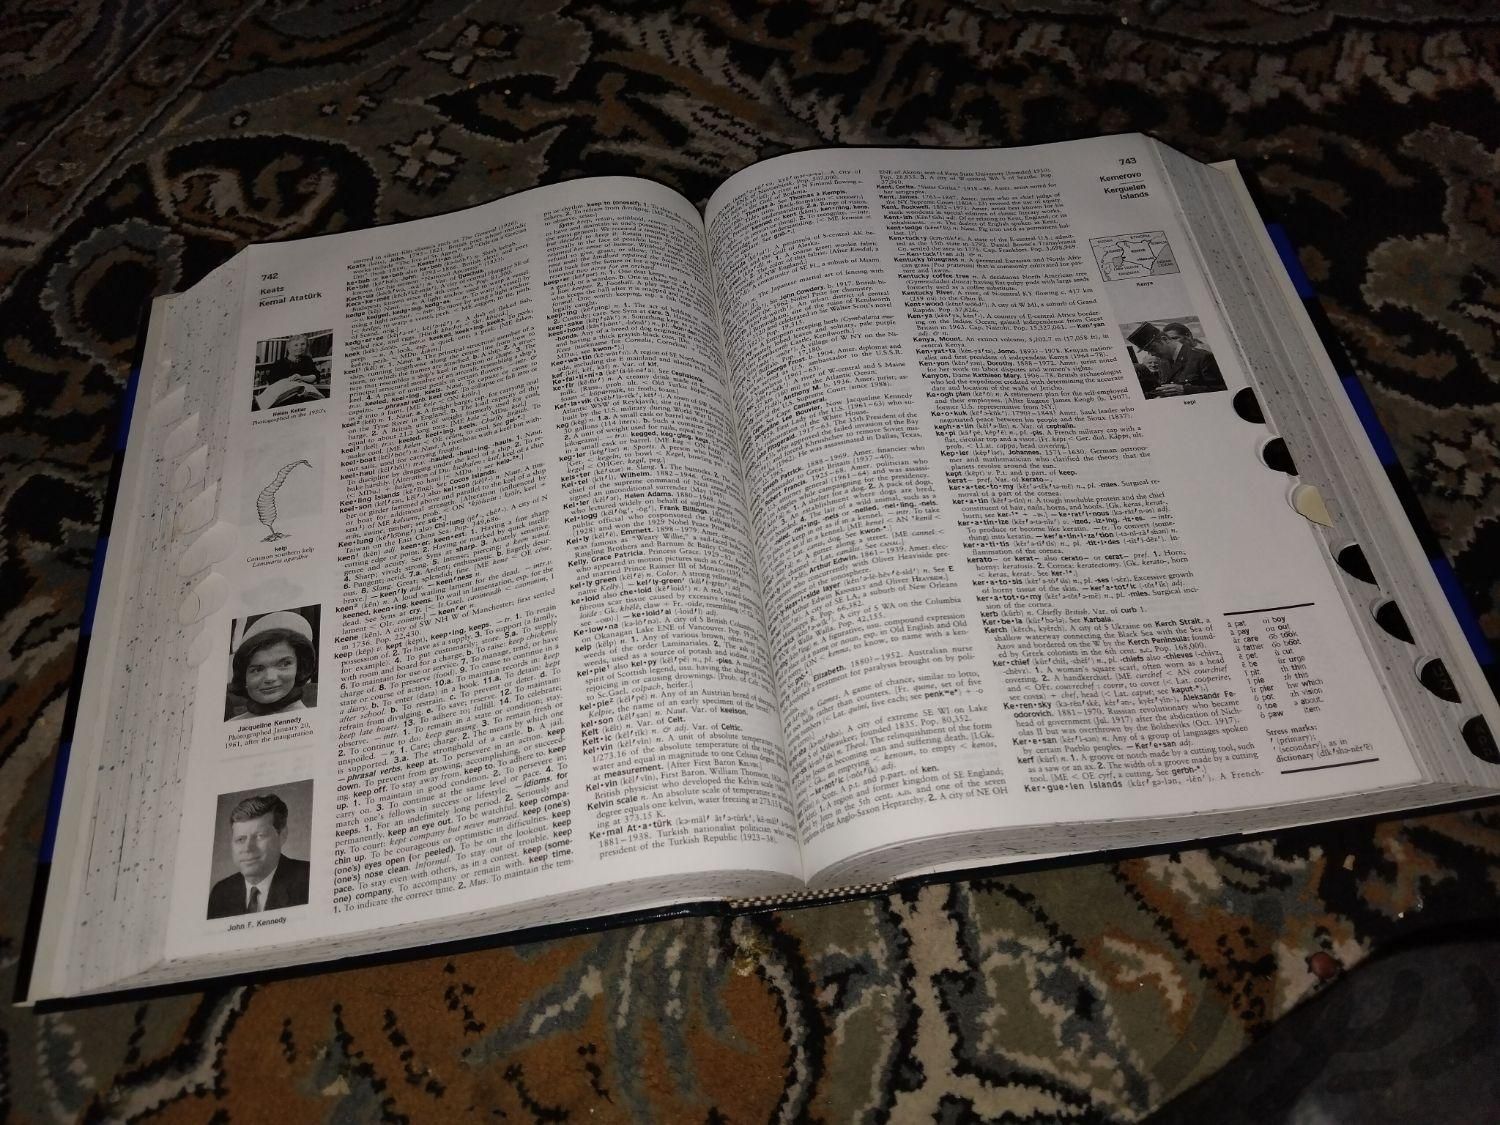 دیکشنری American Heritageاورجینال|کتاب و مجله|تهران, امانیه|دیوار